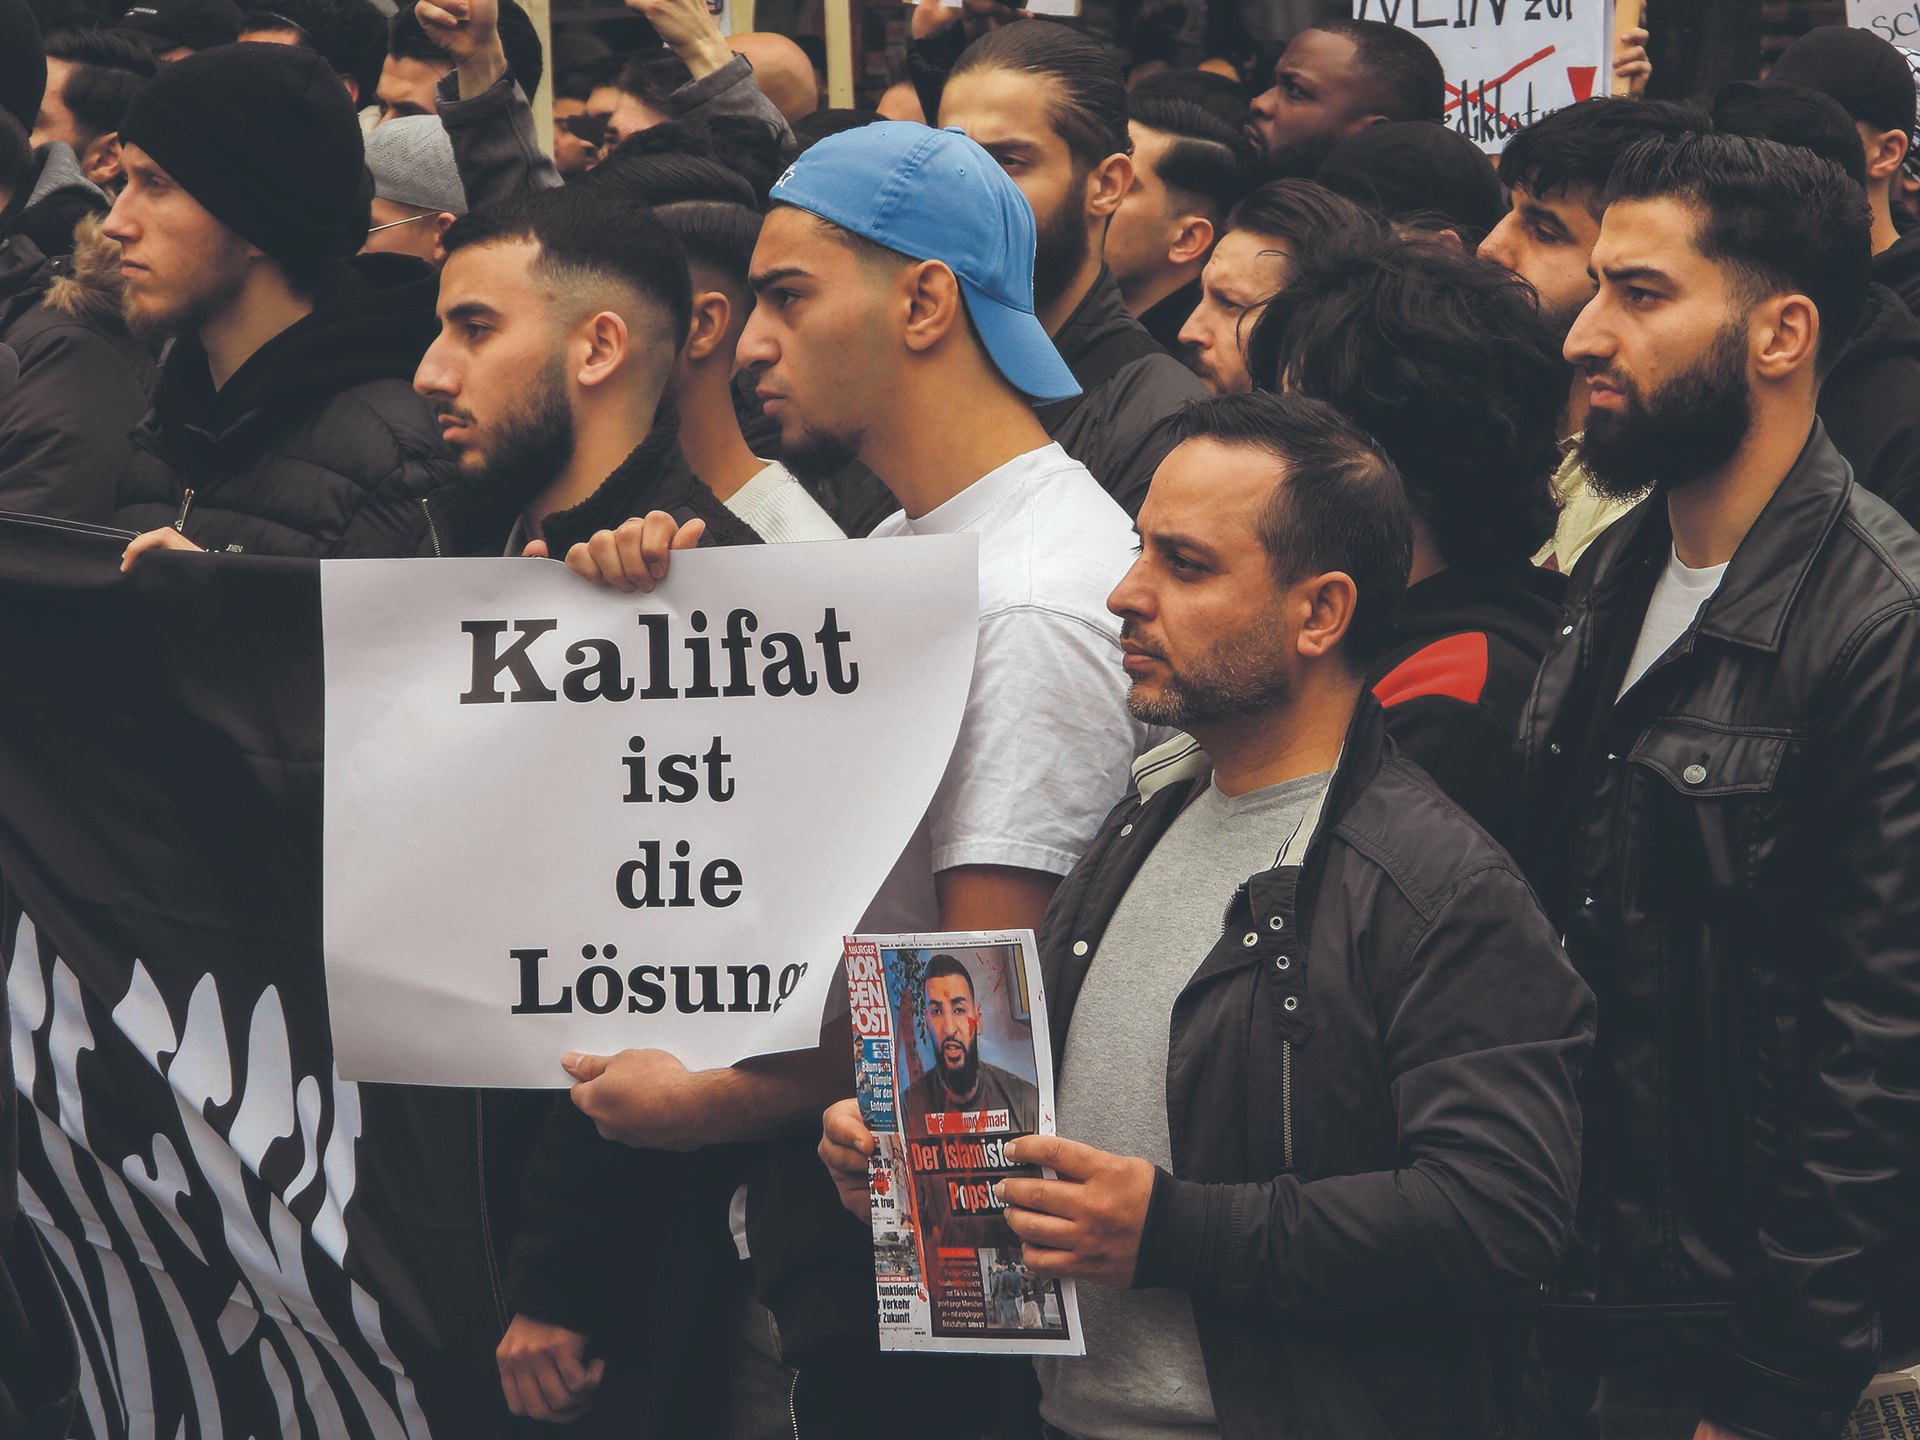 Vergangenen Sonnabend in Hamburg: 1100 Moslems fordern statt Demokratie eine islamische Theokratie